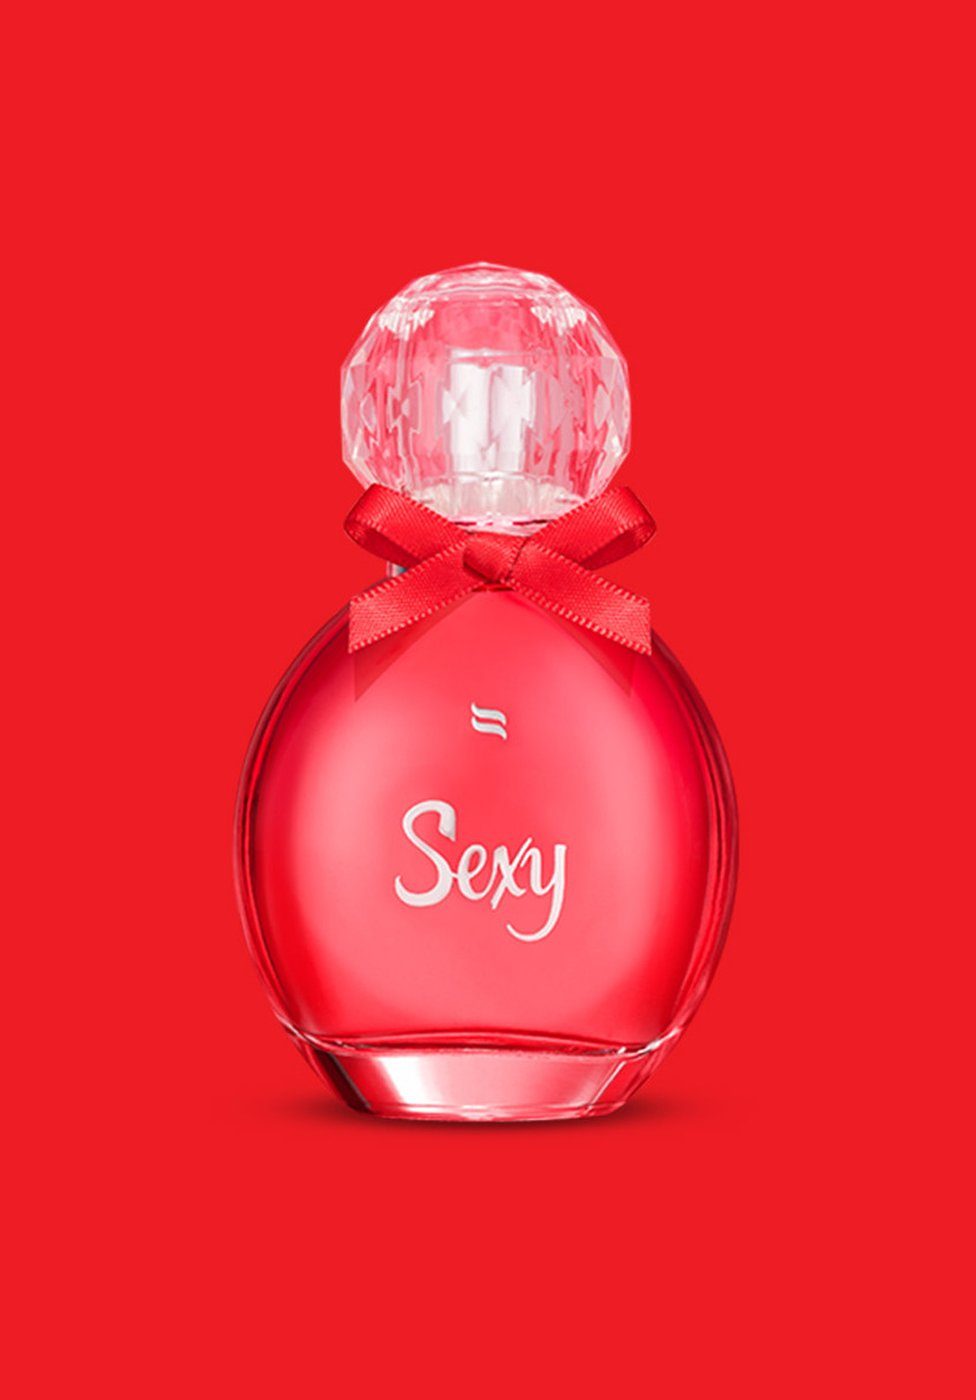 Obsessive Körperspray Parfum mit Pheromonen für Frauen - Sexy